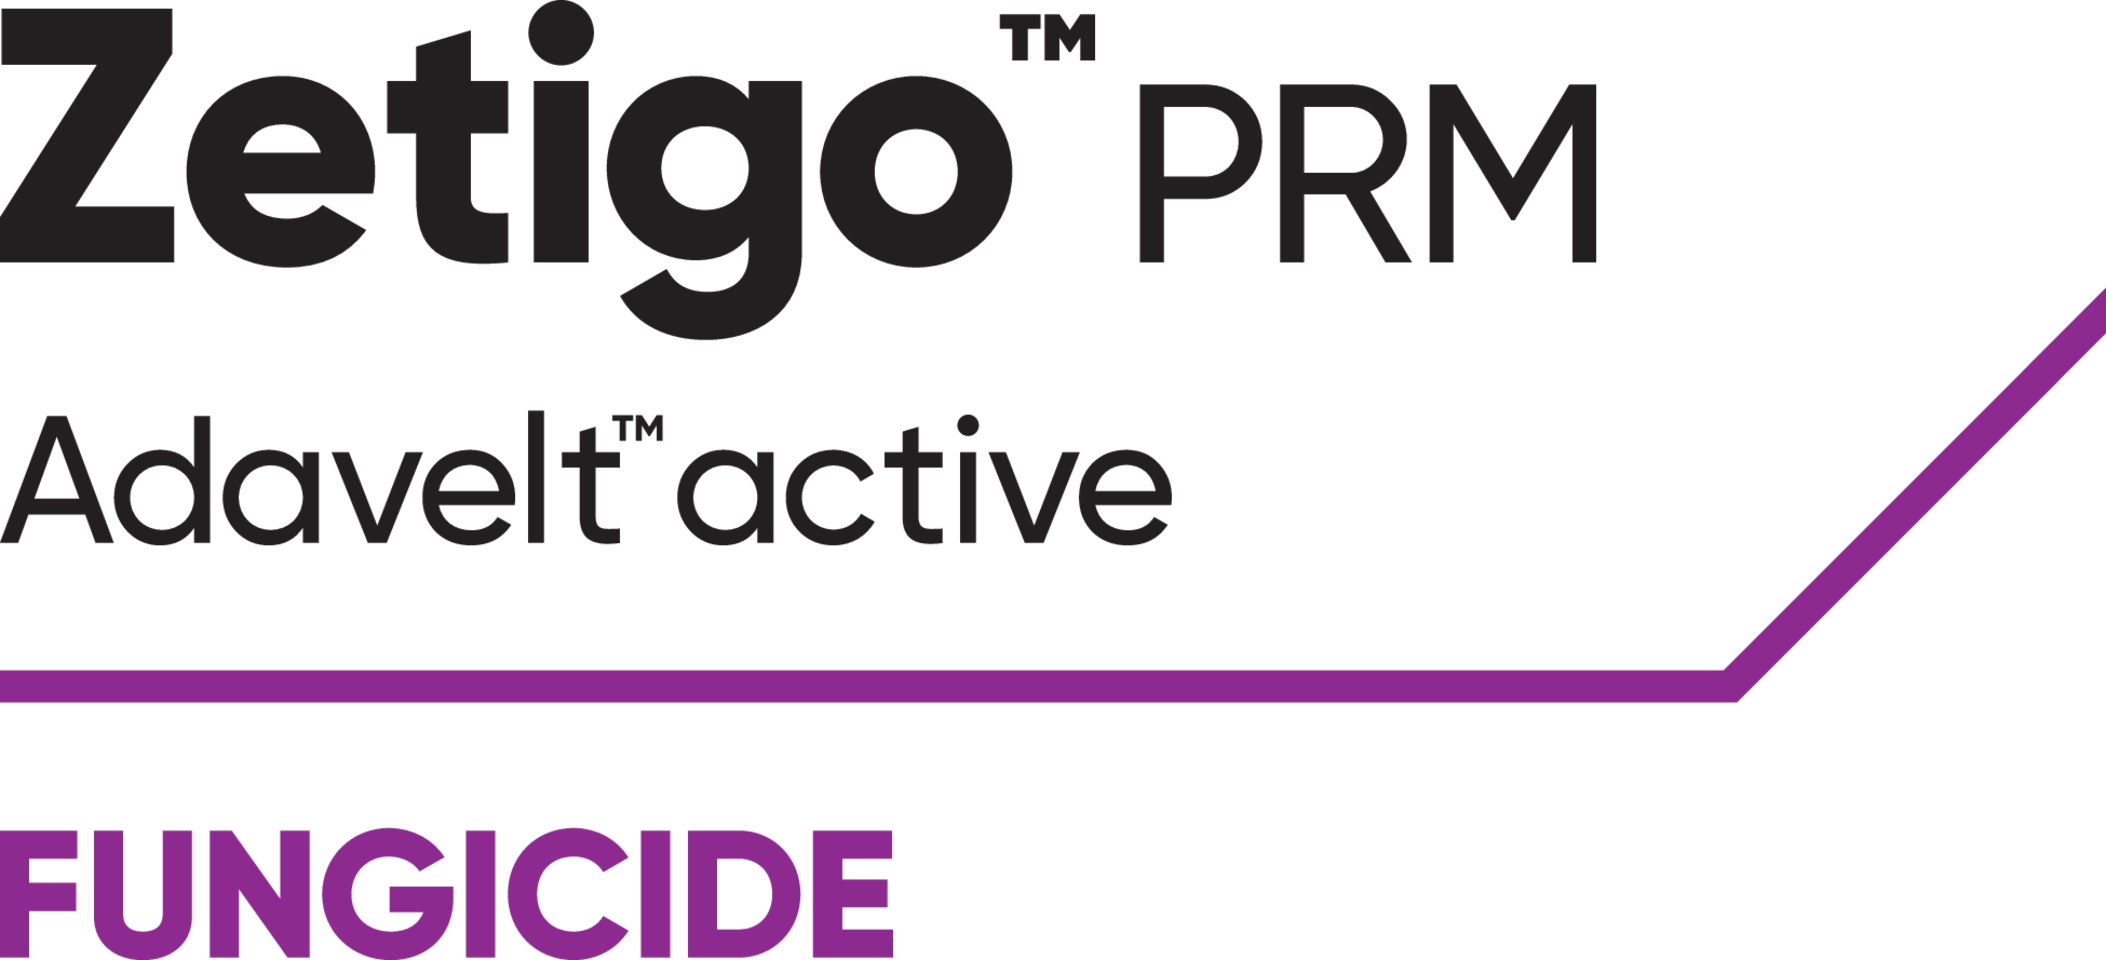 Zetigo PRM logo